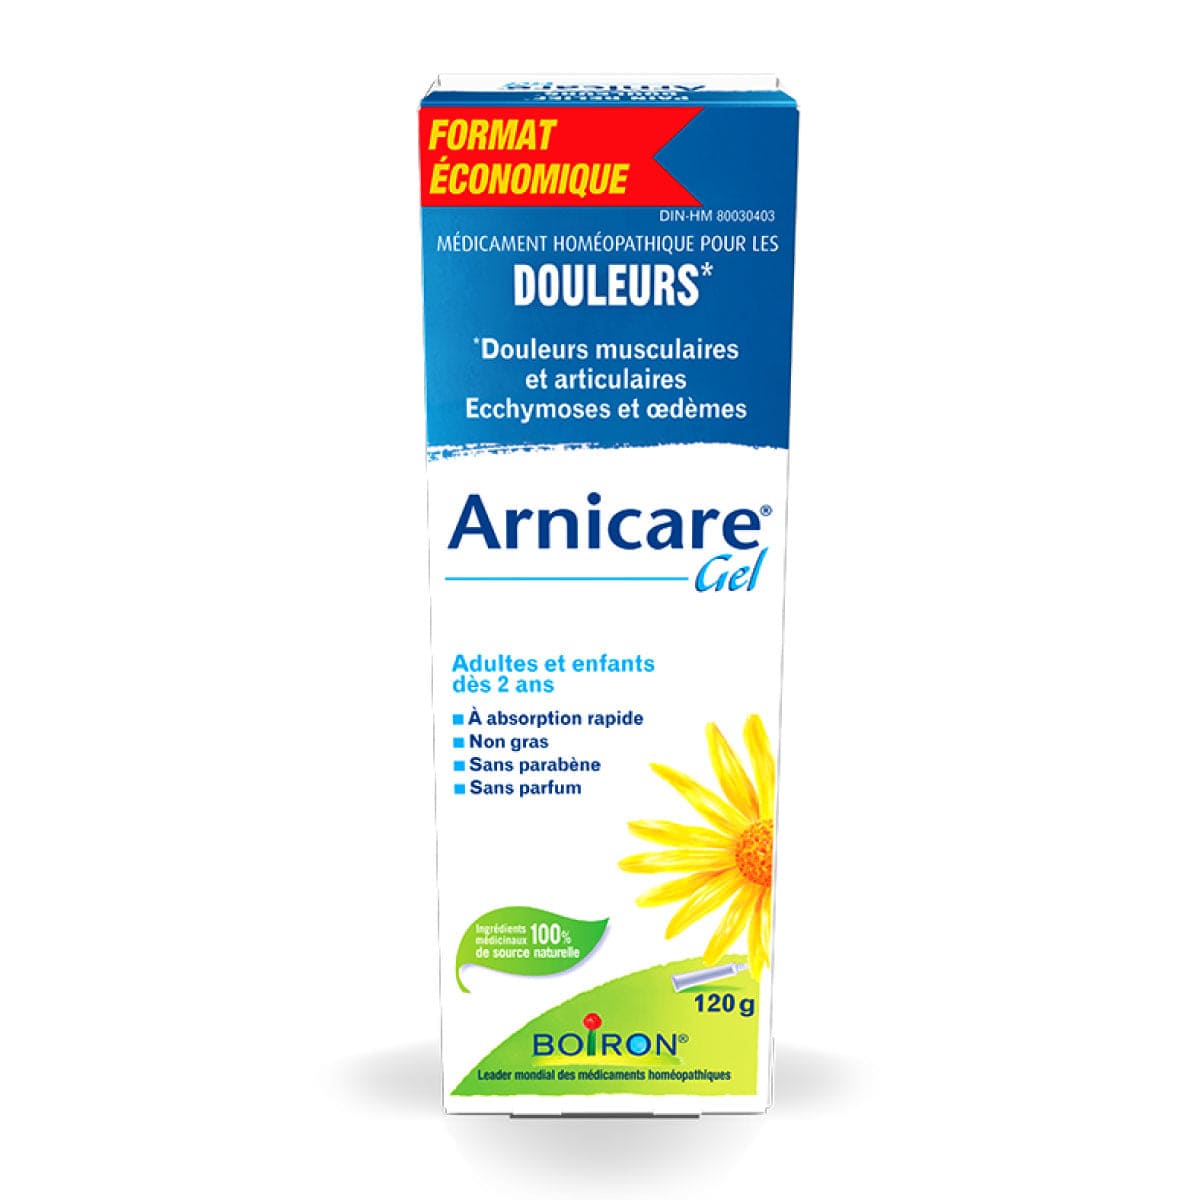 BOIRON LABORATOIRE Suppléments Arnicare gel  (douleurs musculaires et articulaires / bleus et bosses) 120g